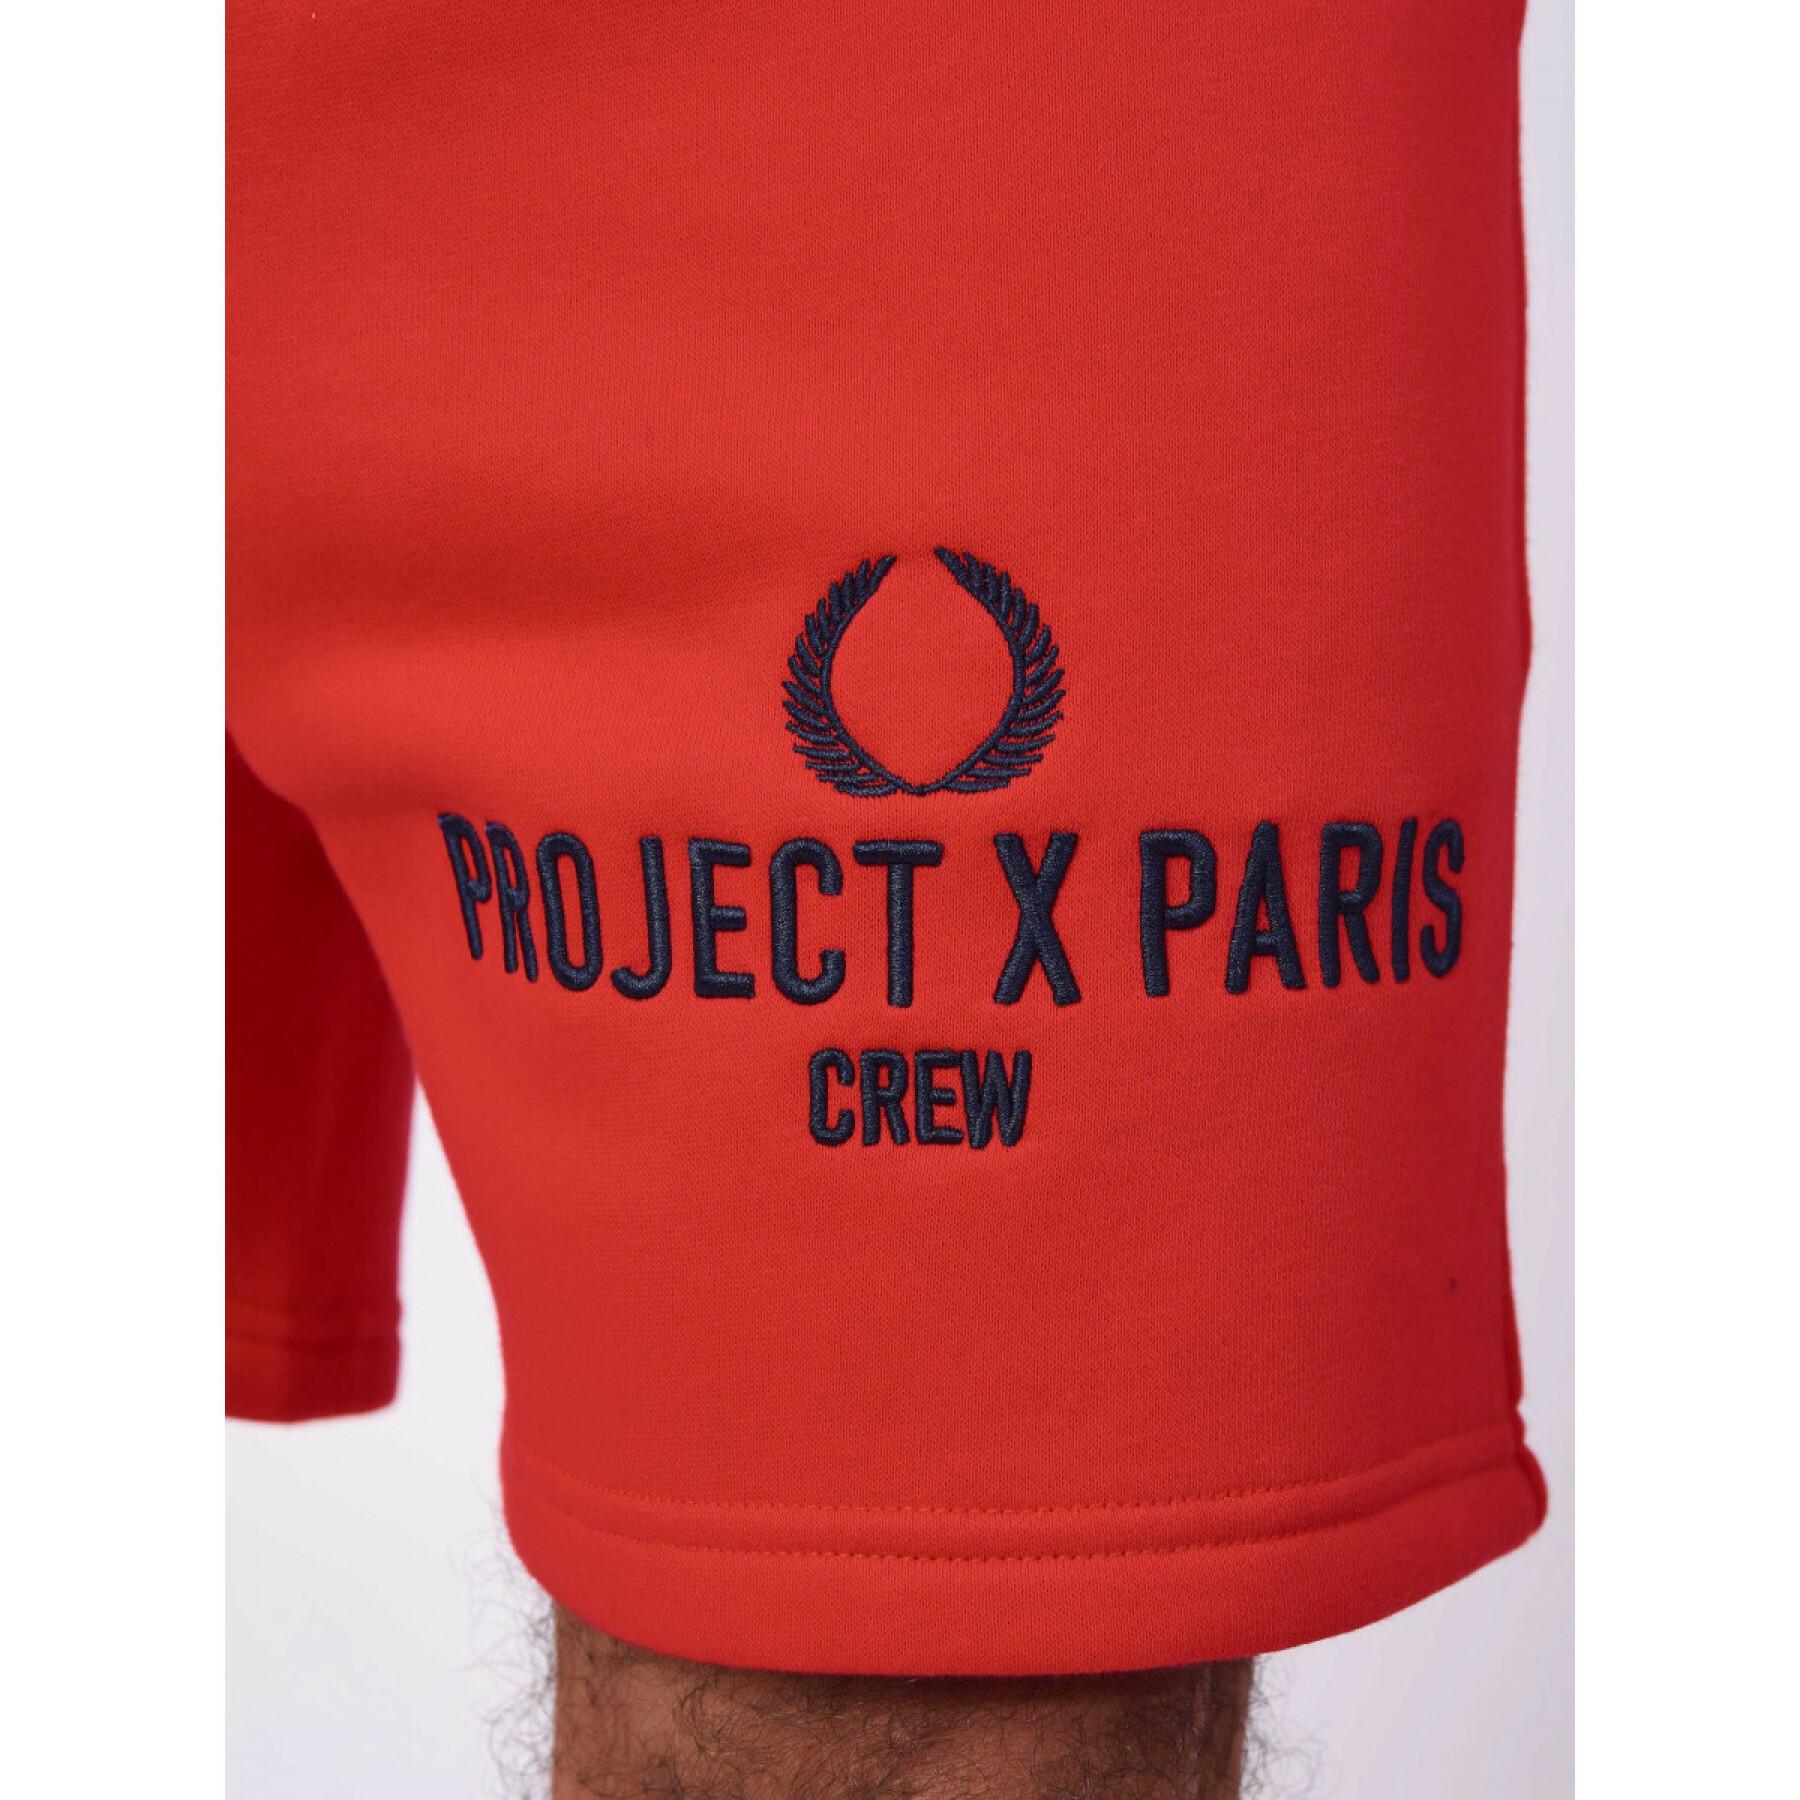 Kort Project X Paris crew